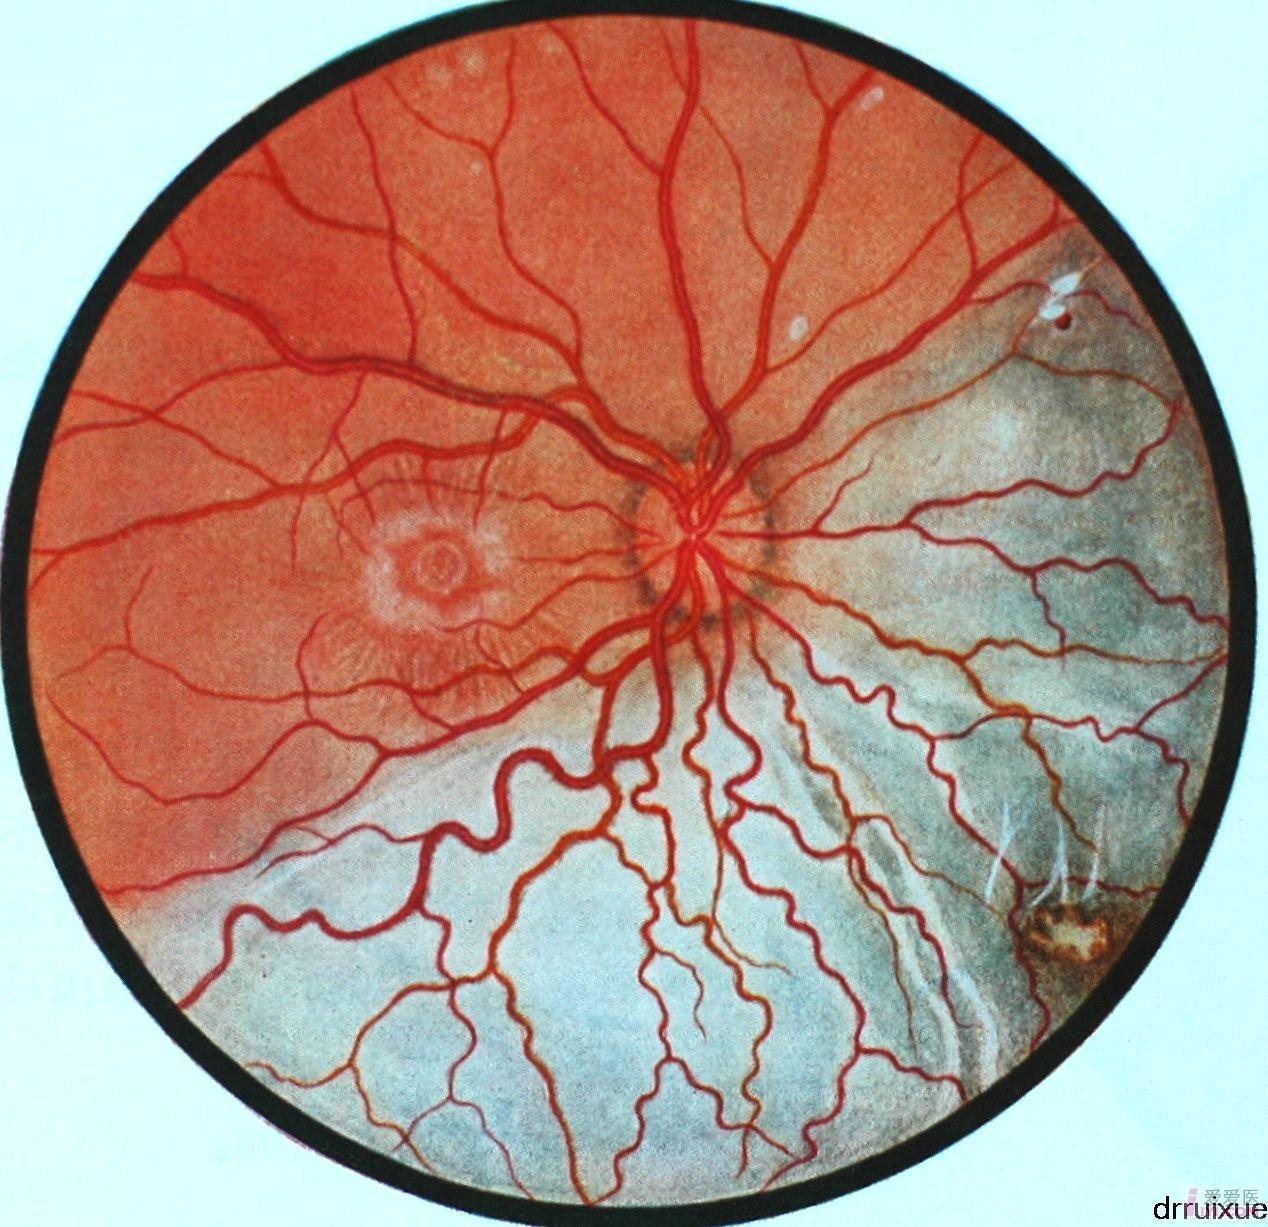 8.右眼球内异物继发性视网膜脱离.JPG